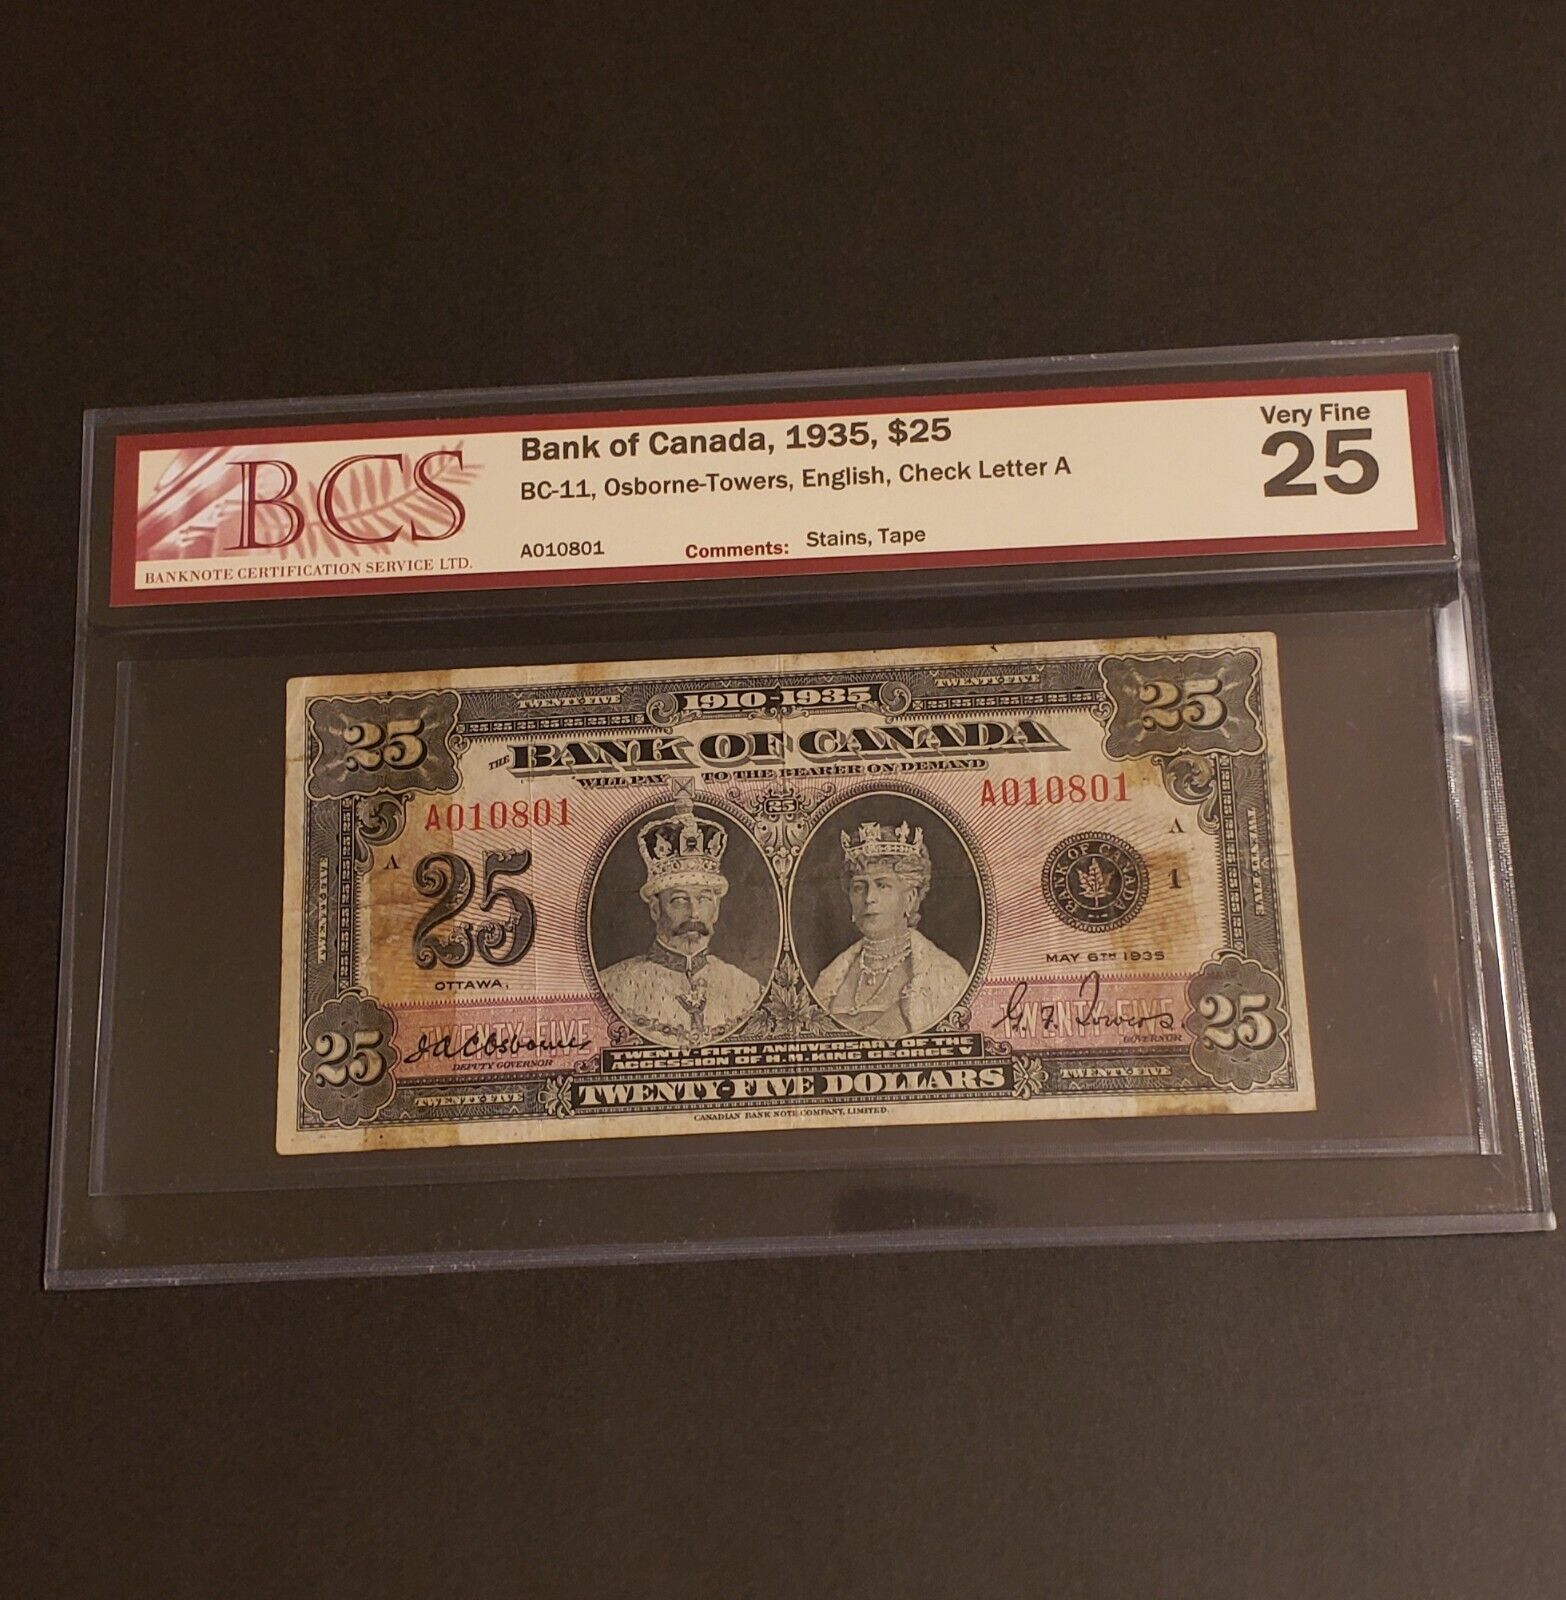 RARE 1935 Bank of Canada $25 Banknote. English version. BCS Graded.